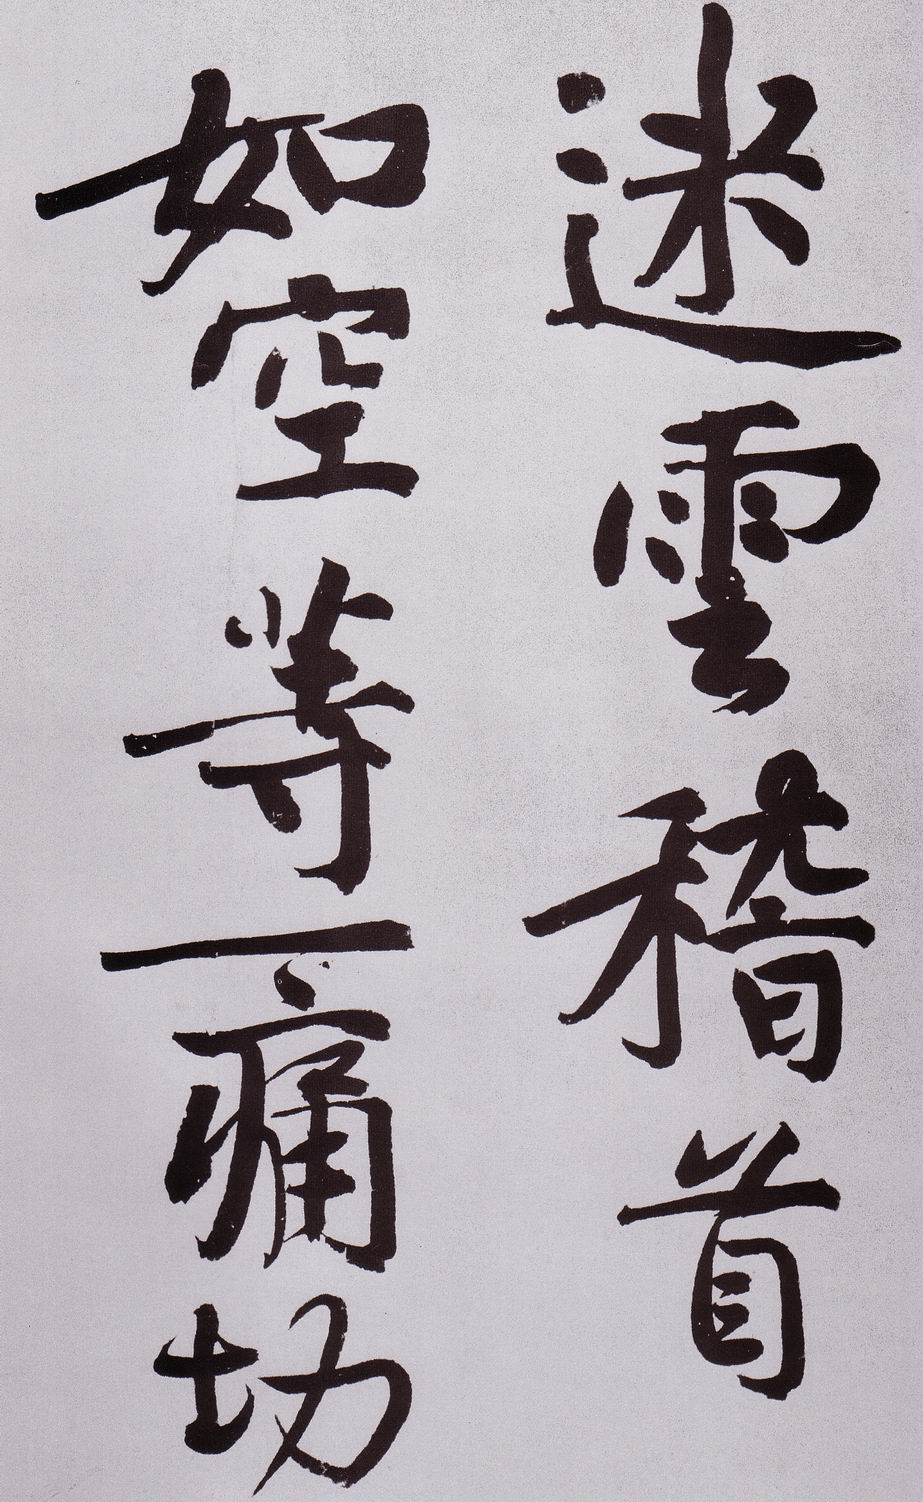 黄庭坚《发愿文卷》-台北故宫博物院藏(图30)